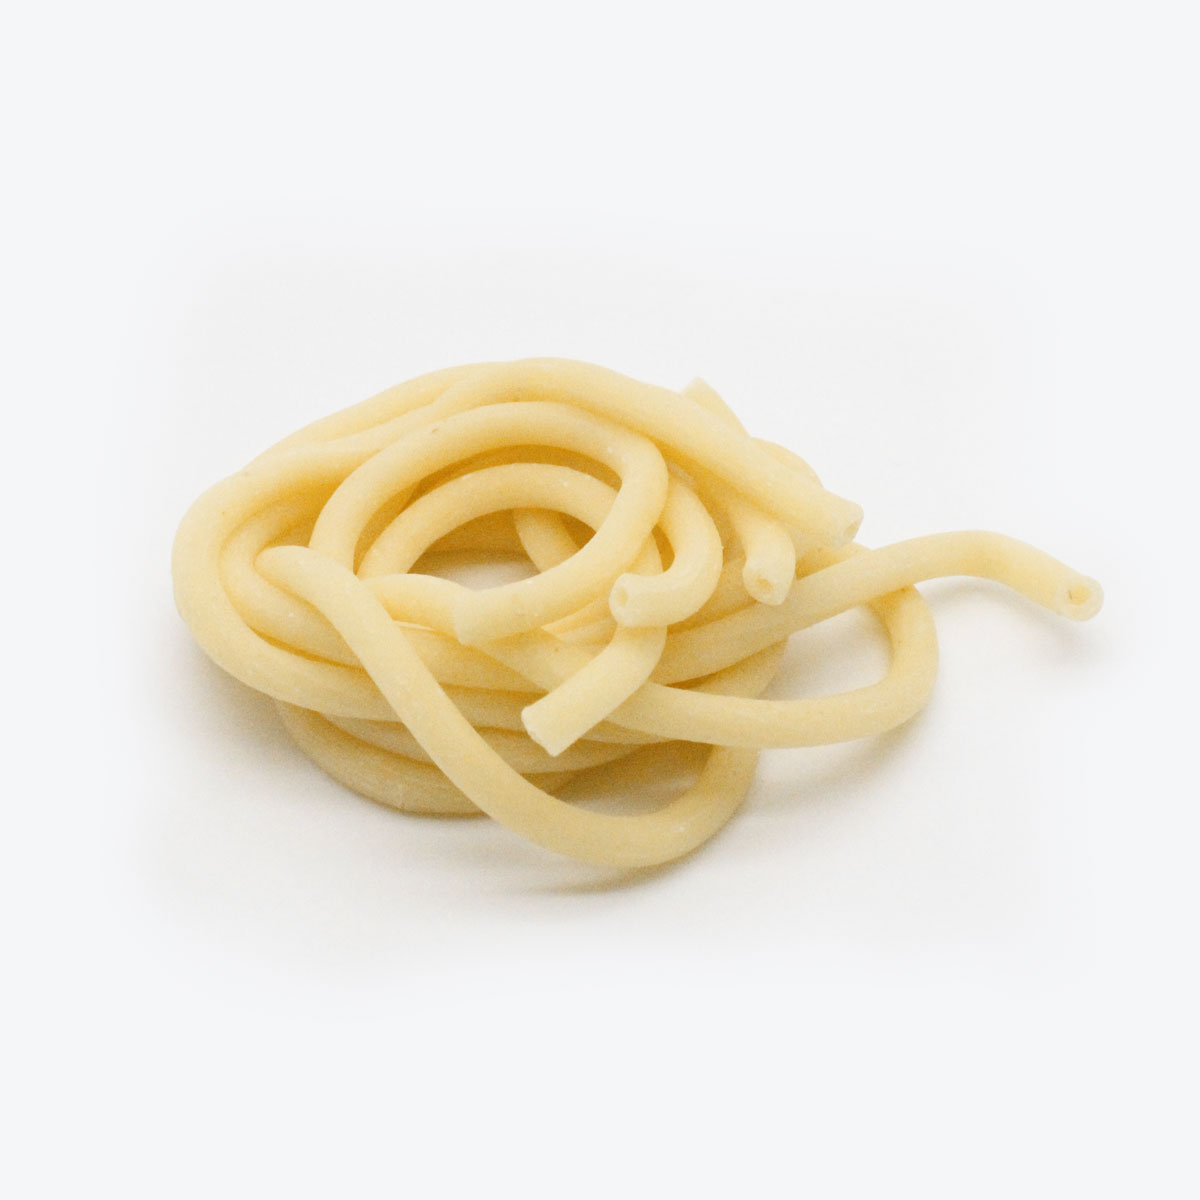 Trafila Pasta Maker N° 717 Bucatini - CAPO12